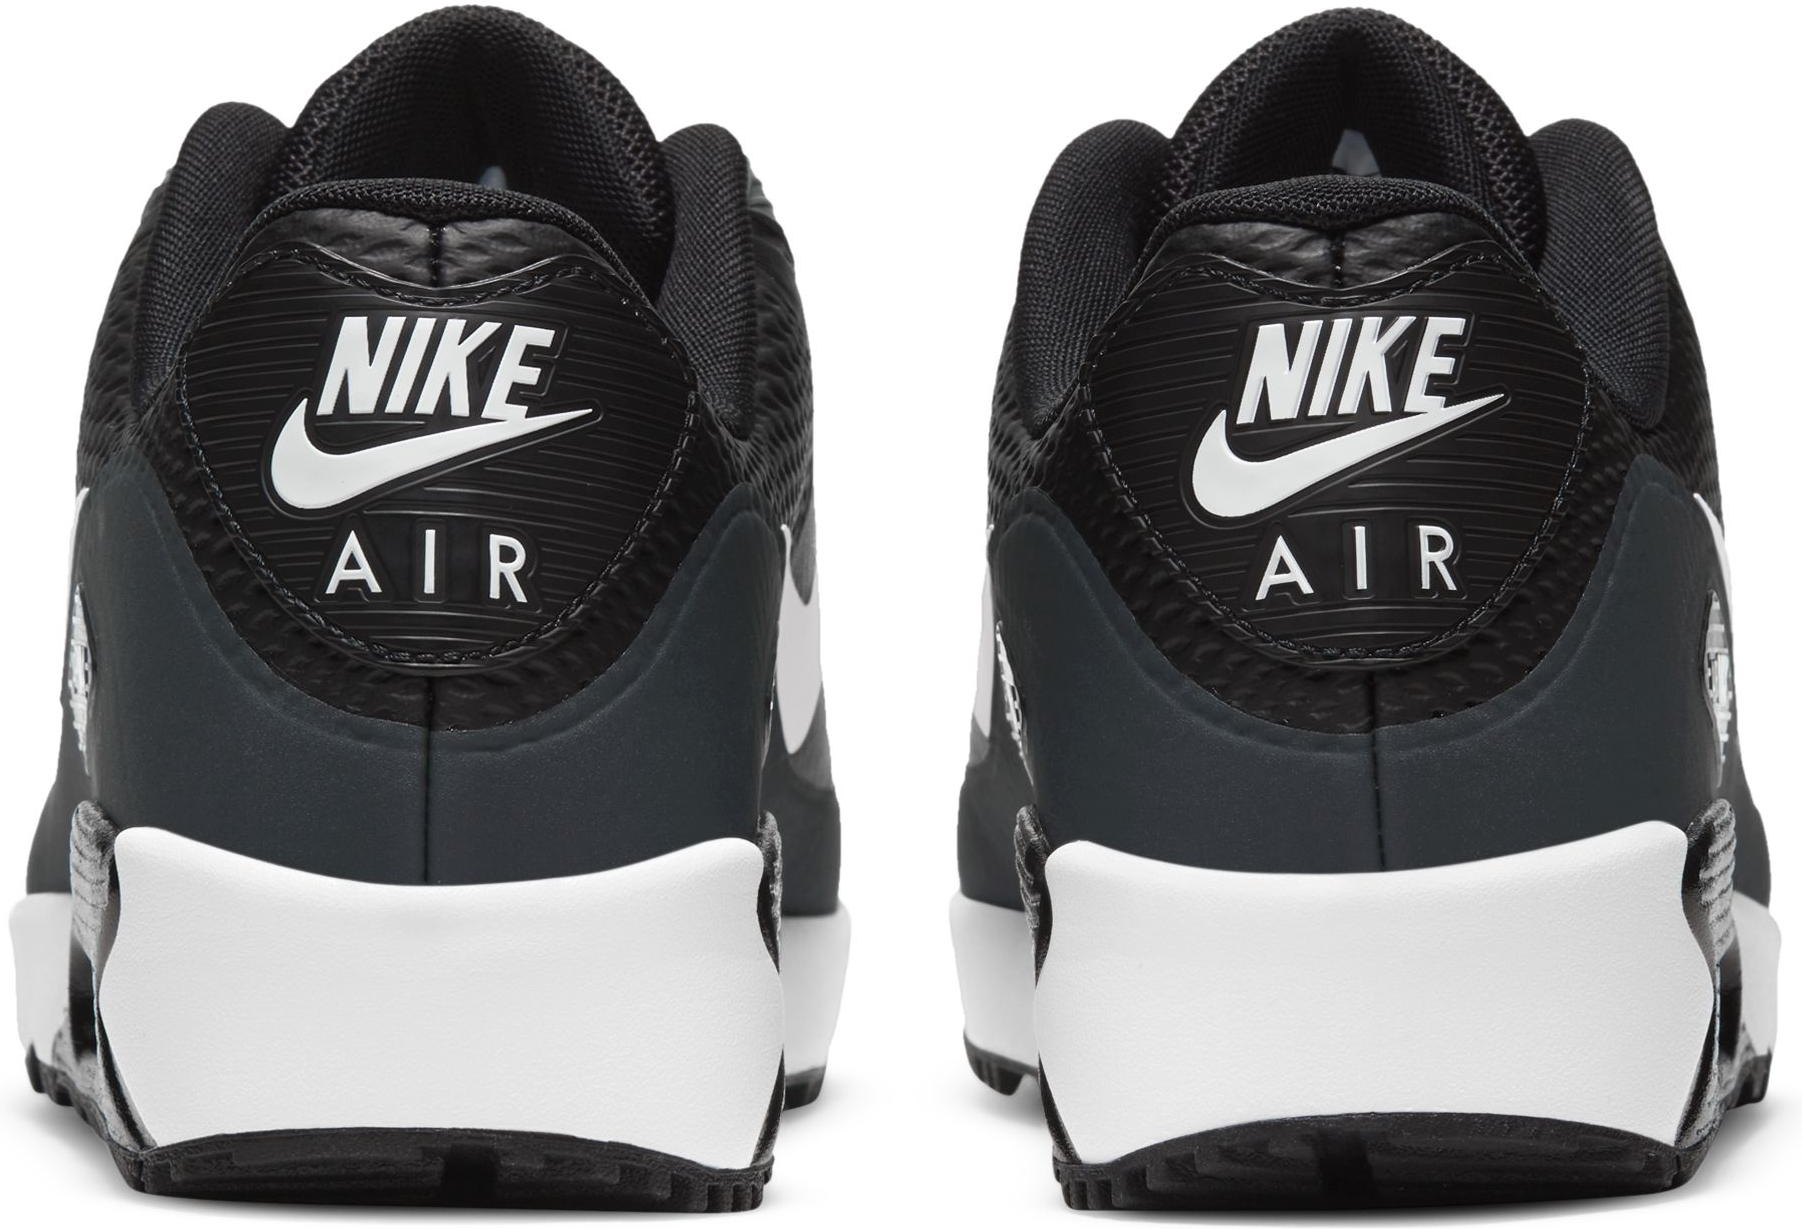 Nike Air Max 90 G Golfschuh, black/white/grey